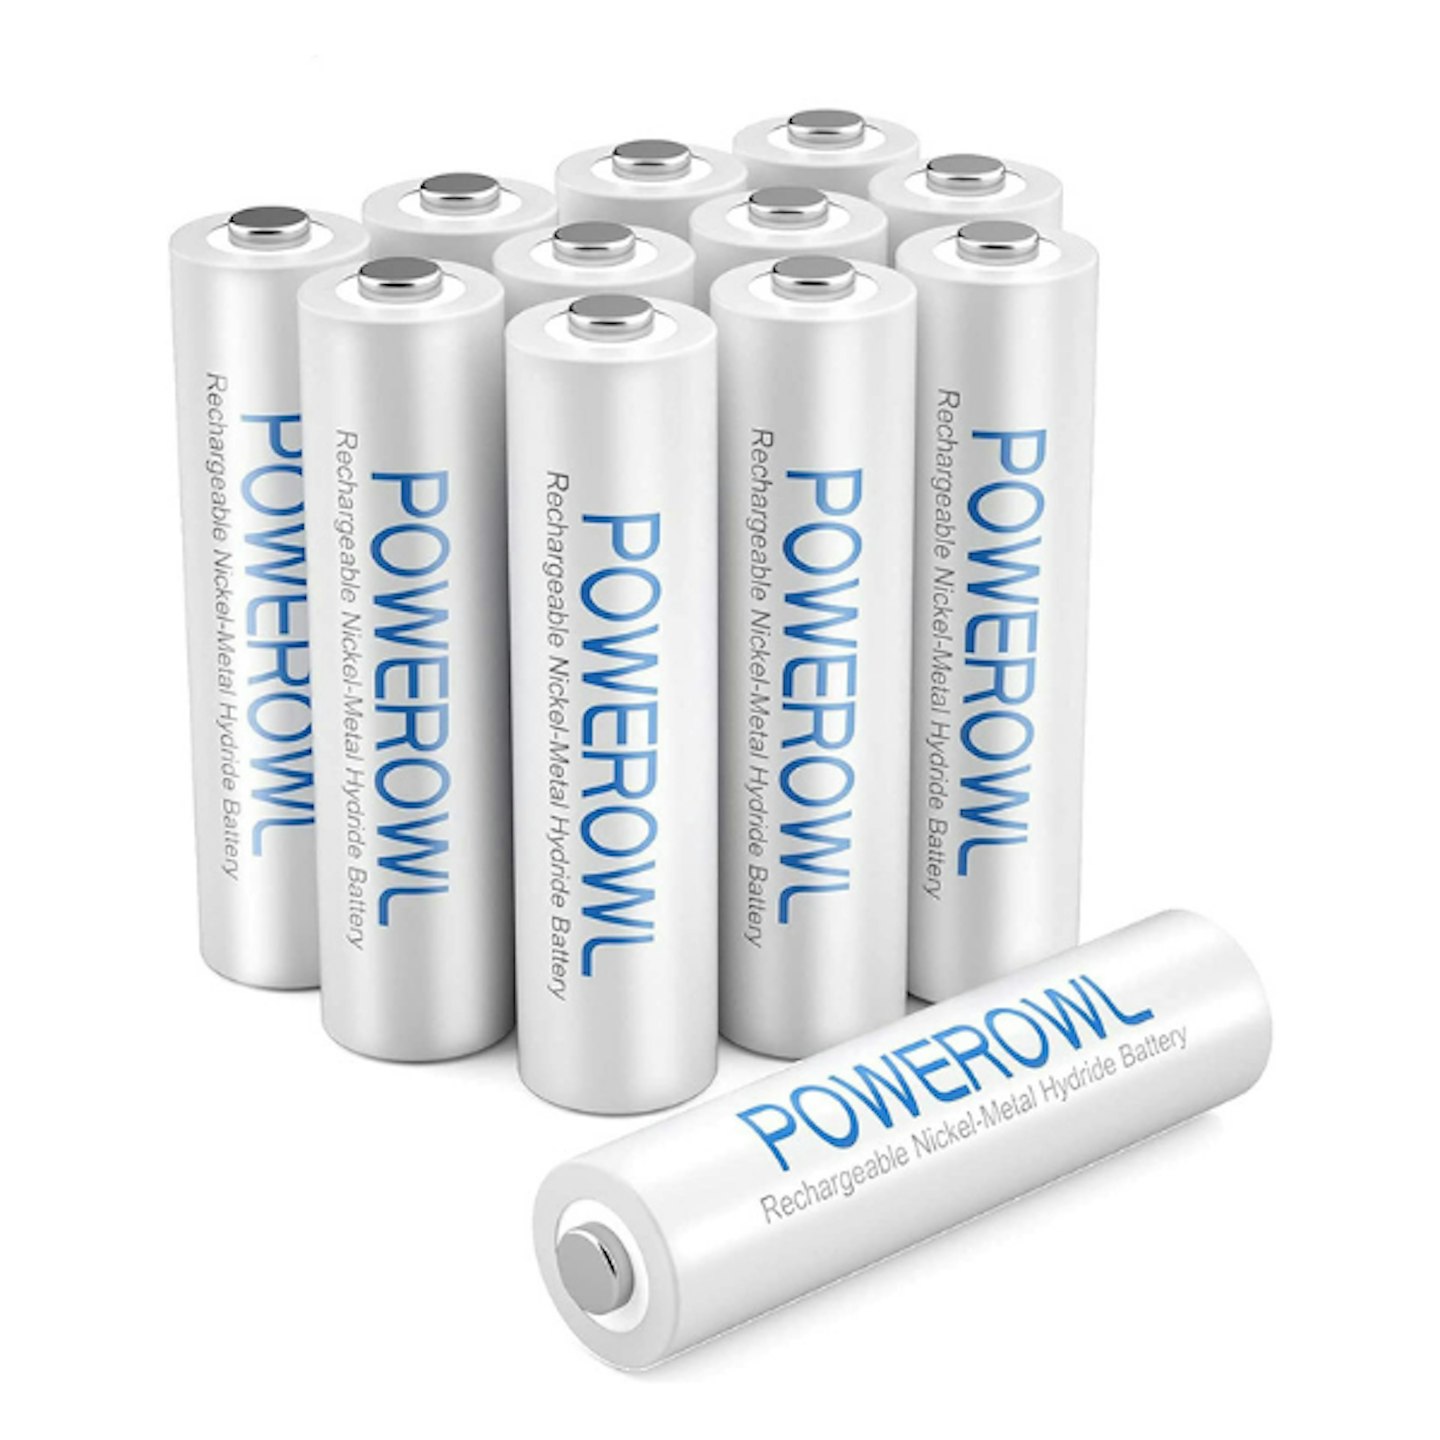 POWEROWL AAA Batteries